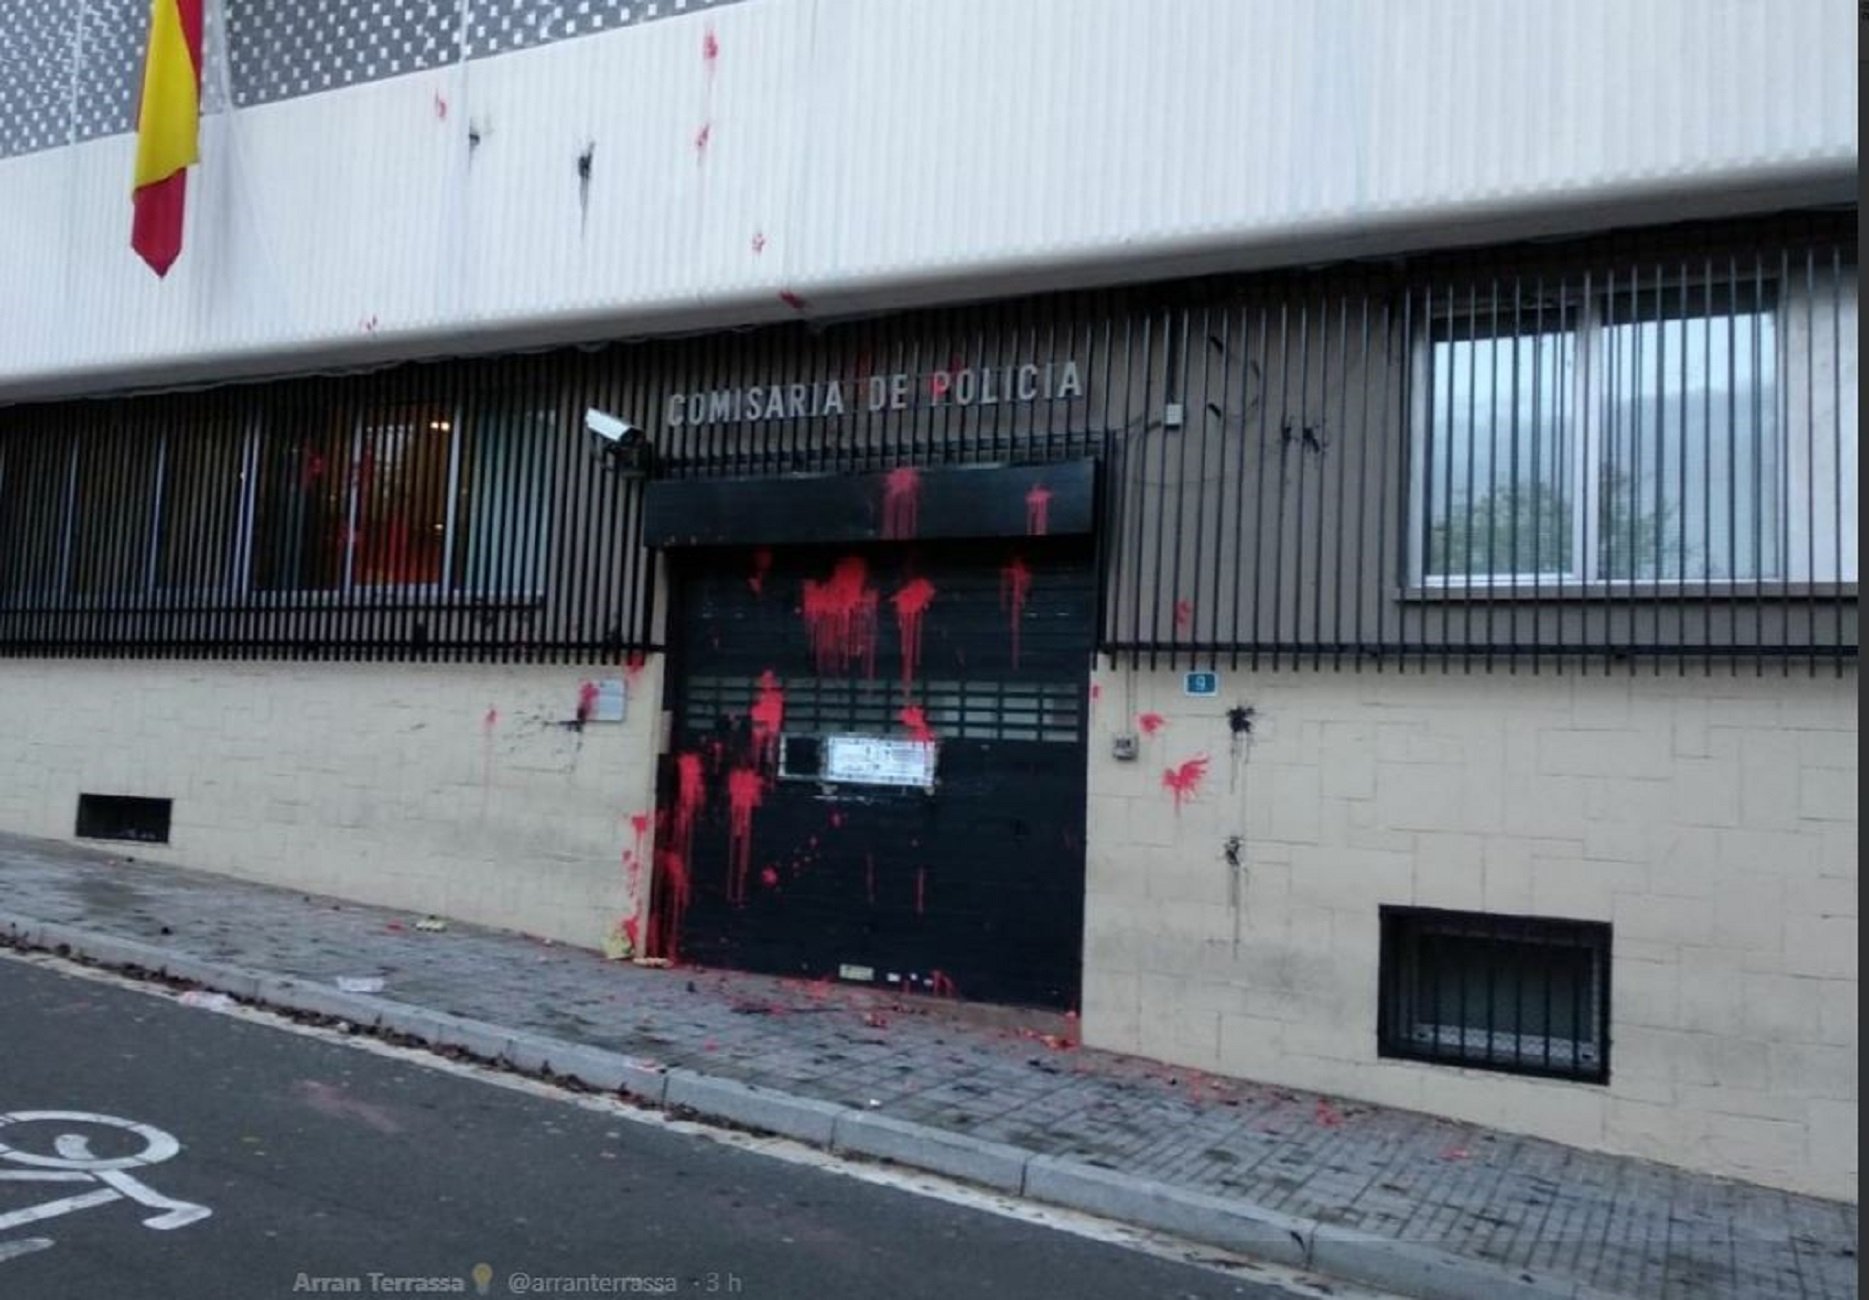 Arran ataca ahora con pintura la comisaría de la policía española de Terrassa